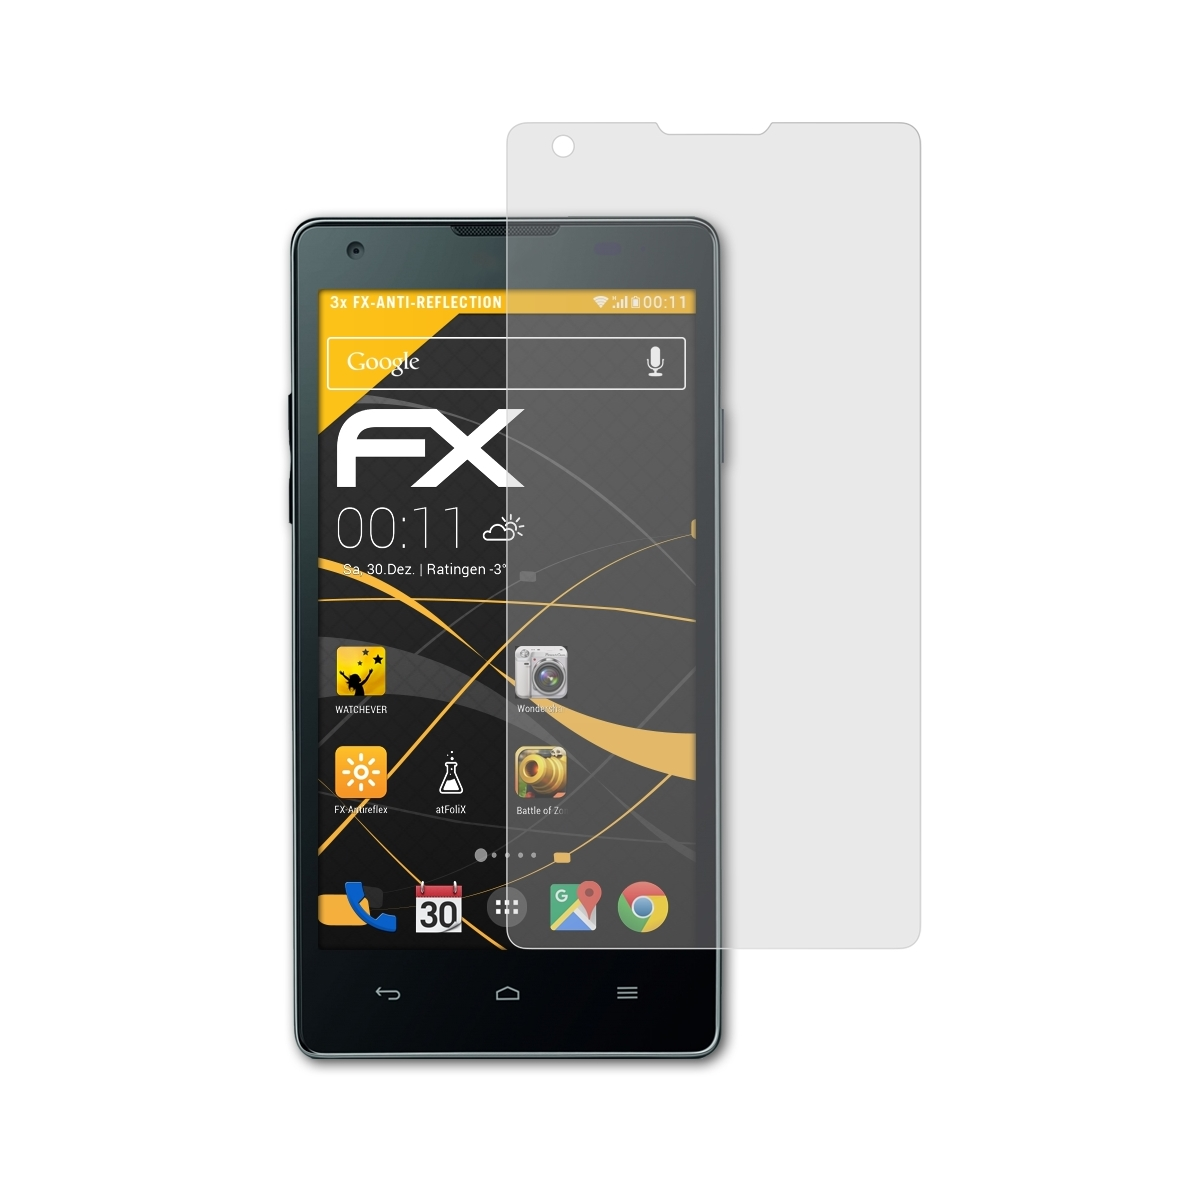 3x ATFOLIX FX-Antireflex Huawei Ascend G700) Displayschutz(für